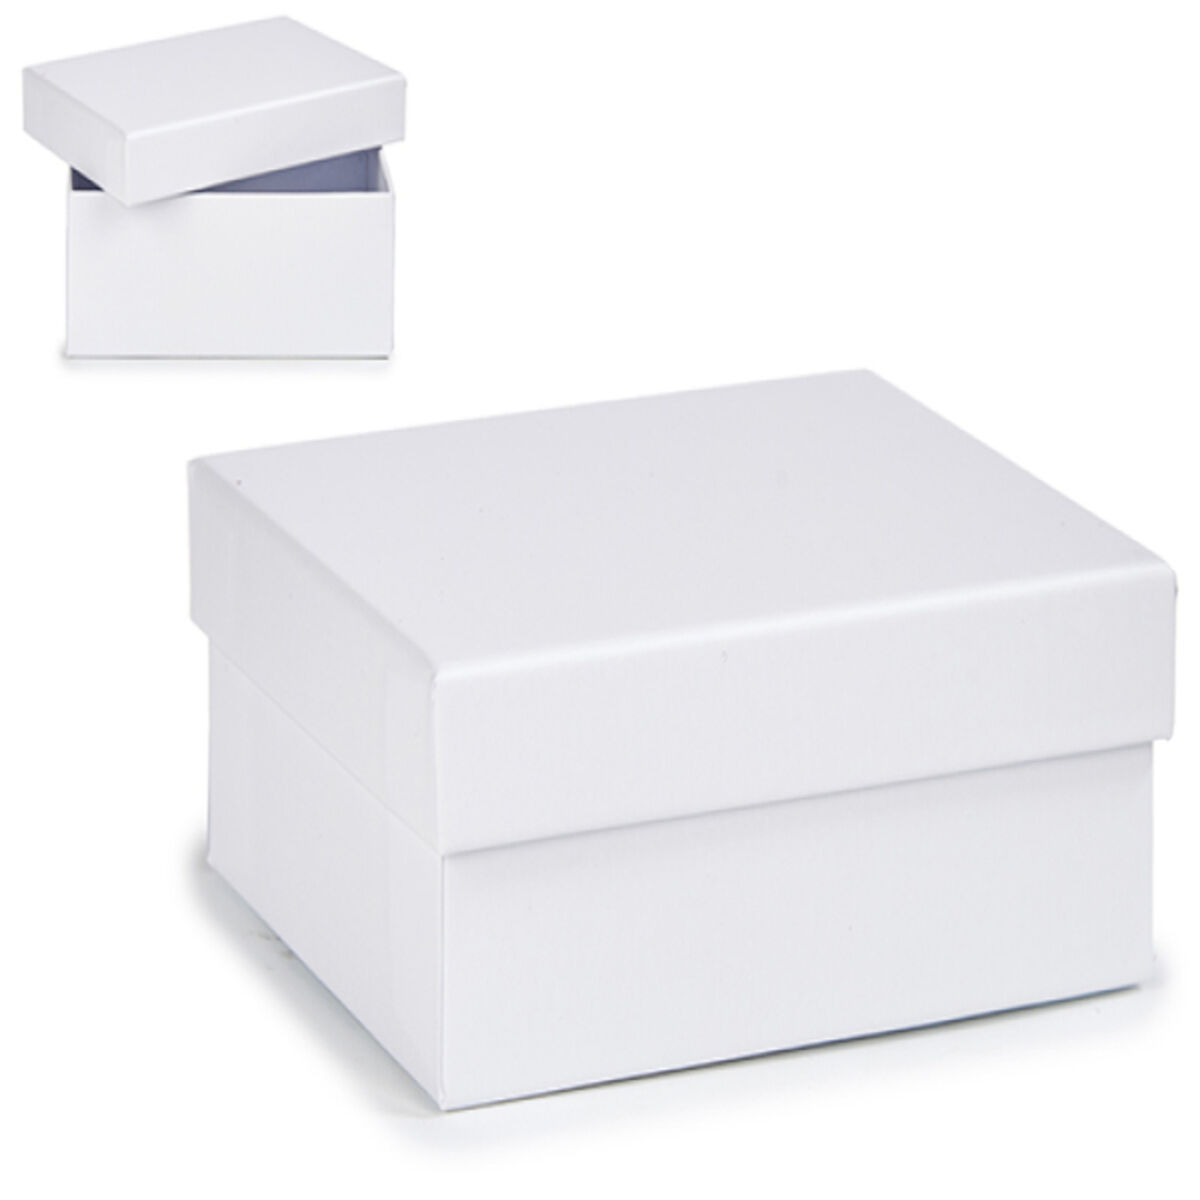 Cutie Multifuncțională Carton Alb - Măsură 8,5 x 5 x 12,5 cm